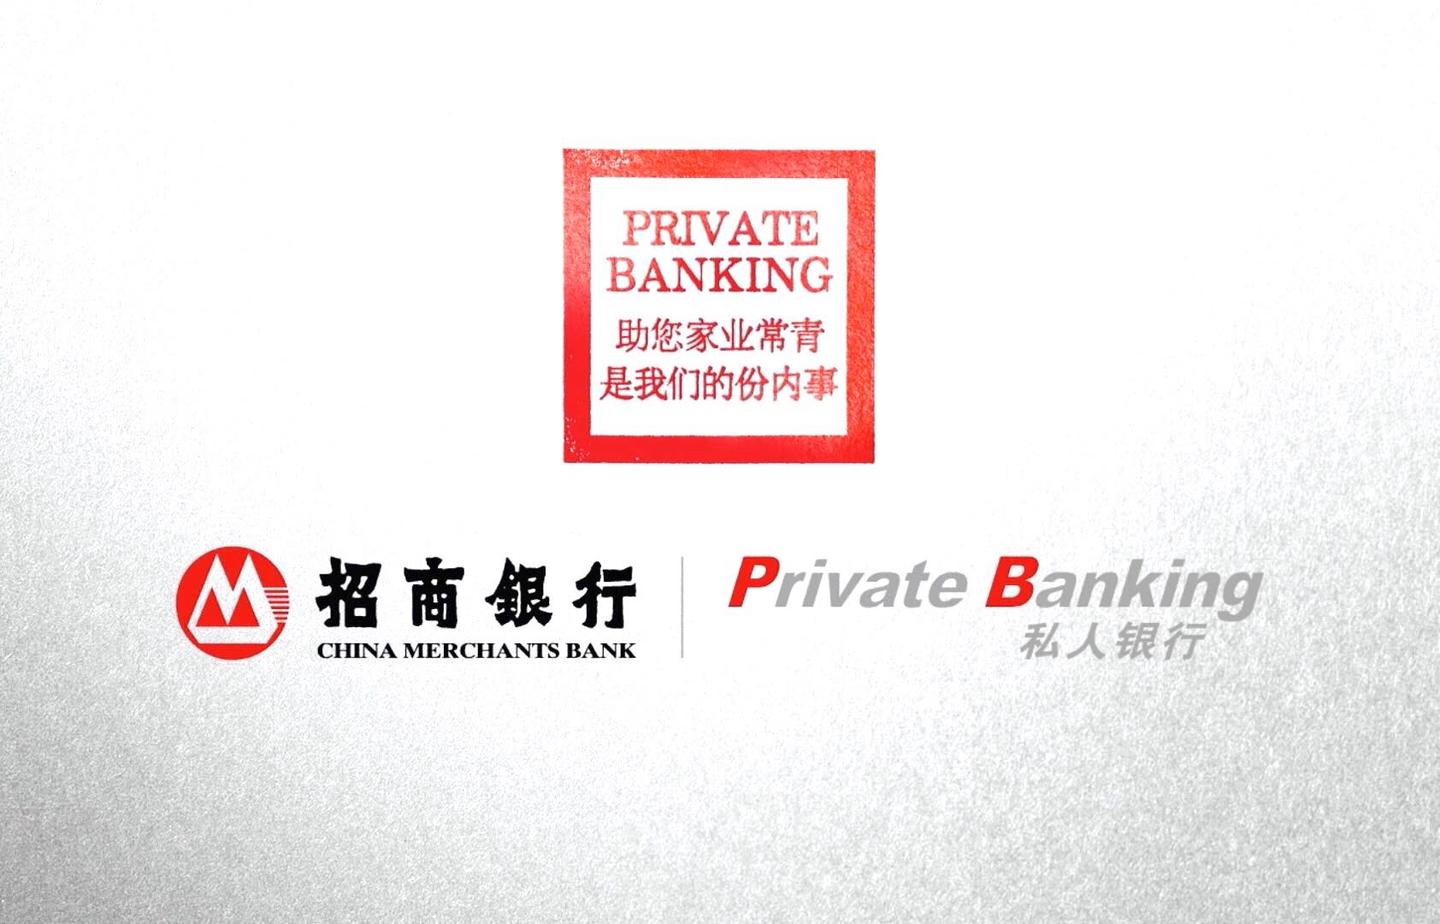 招商银行logo私人银行图片